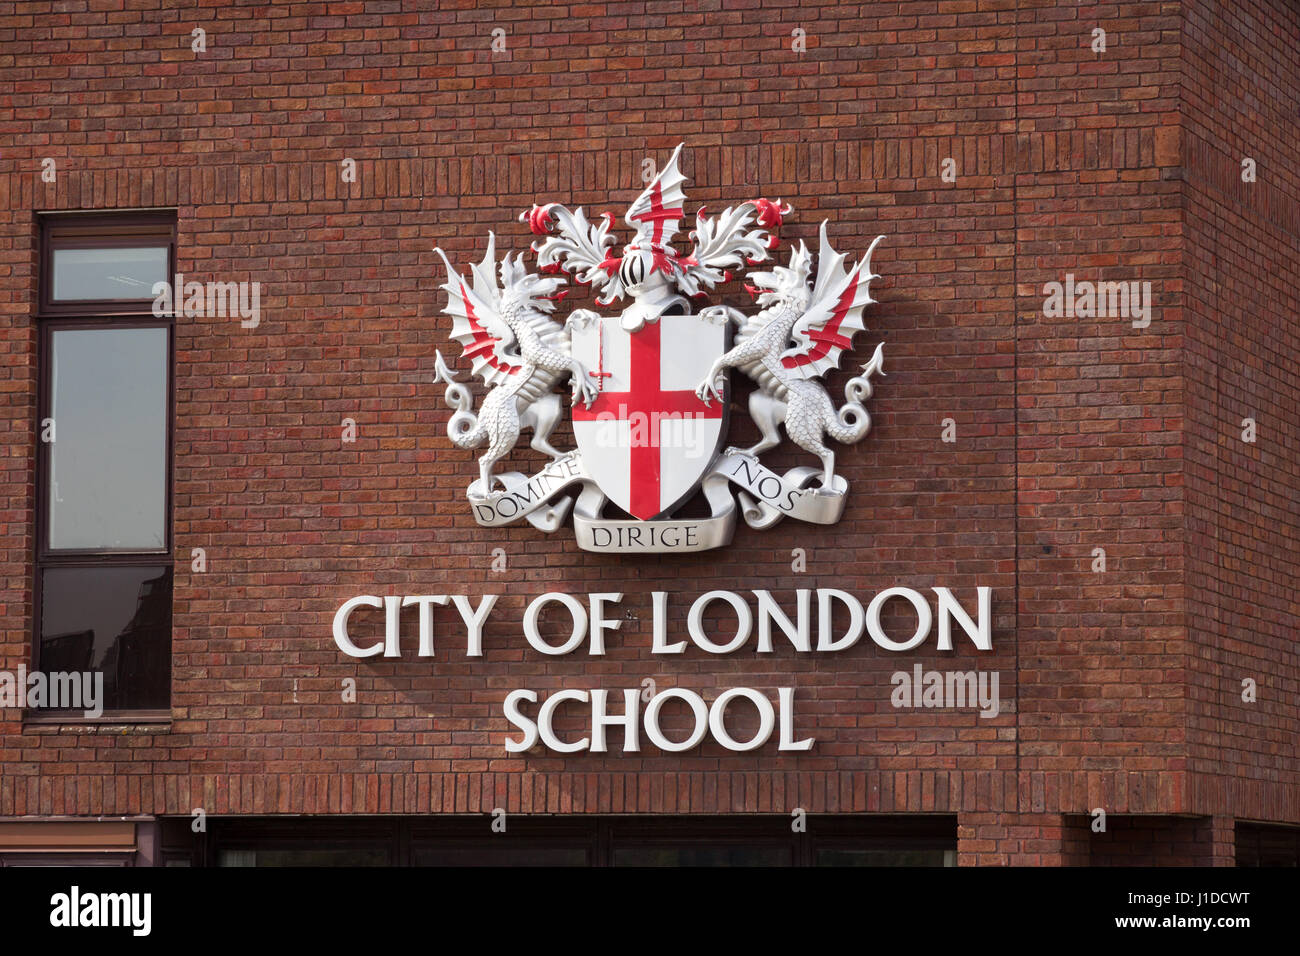 LONDON, UK - 1. Juli 2015: City of London School Schild an einer roten Backsteinmauer in London. CLS ist eine Tagesschule für Jungen. Stockfoto